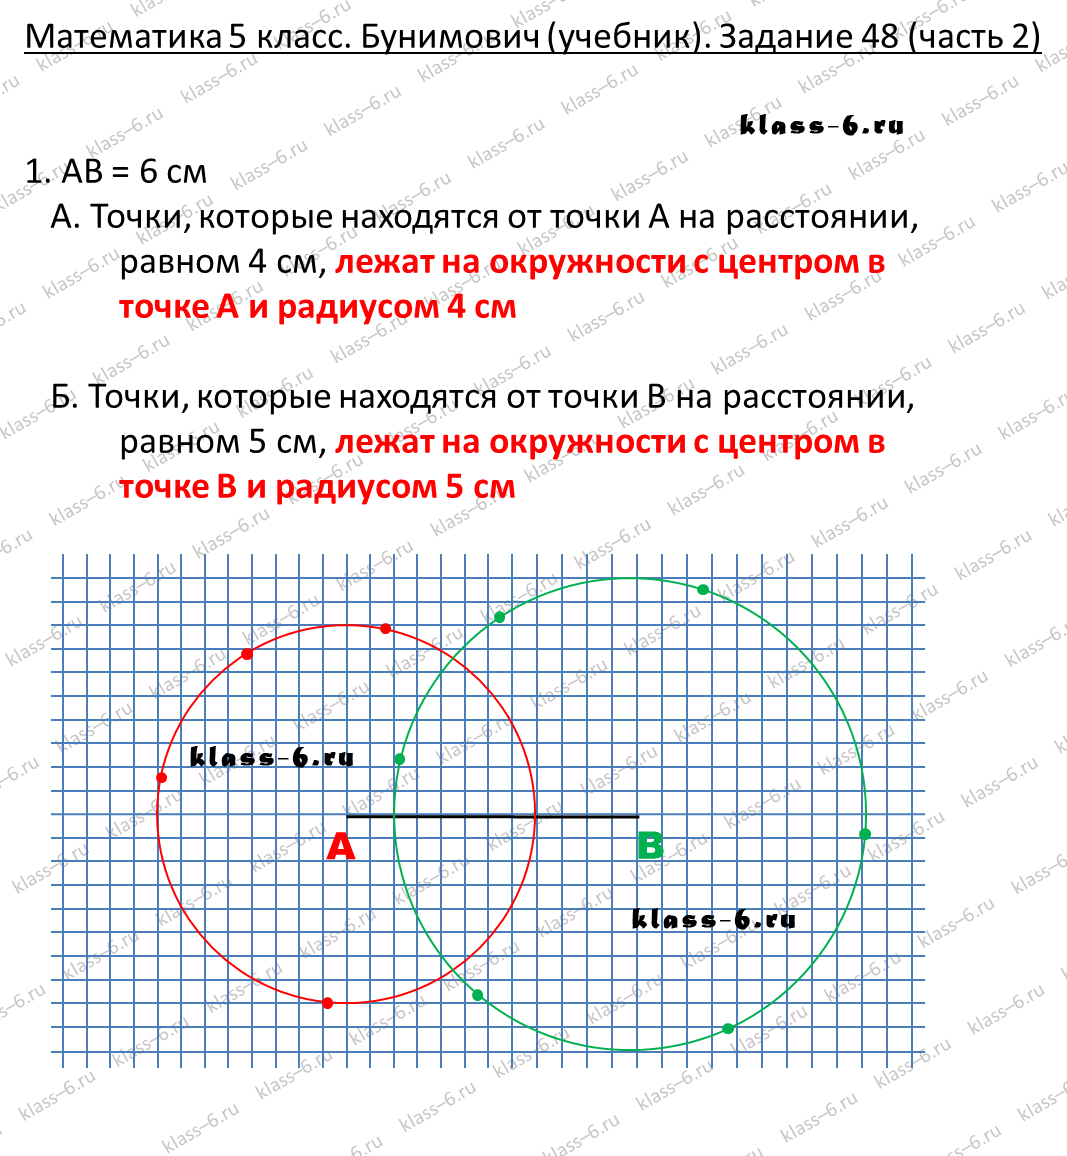 решебник и гдз по математике учебник Бунимович 5 класс задание 48-2